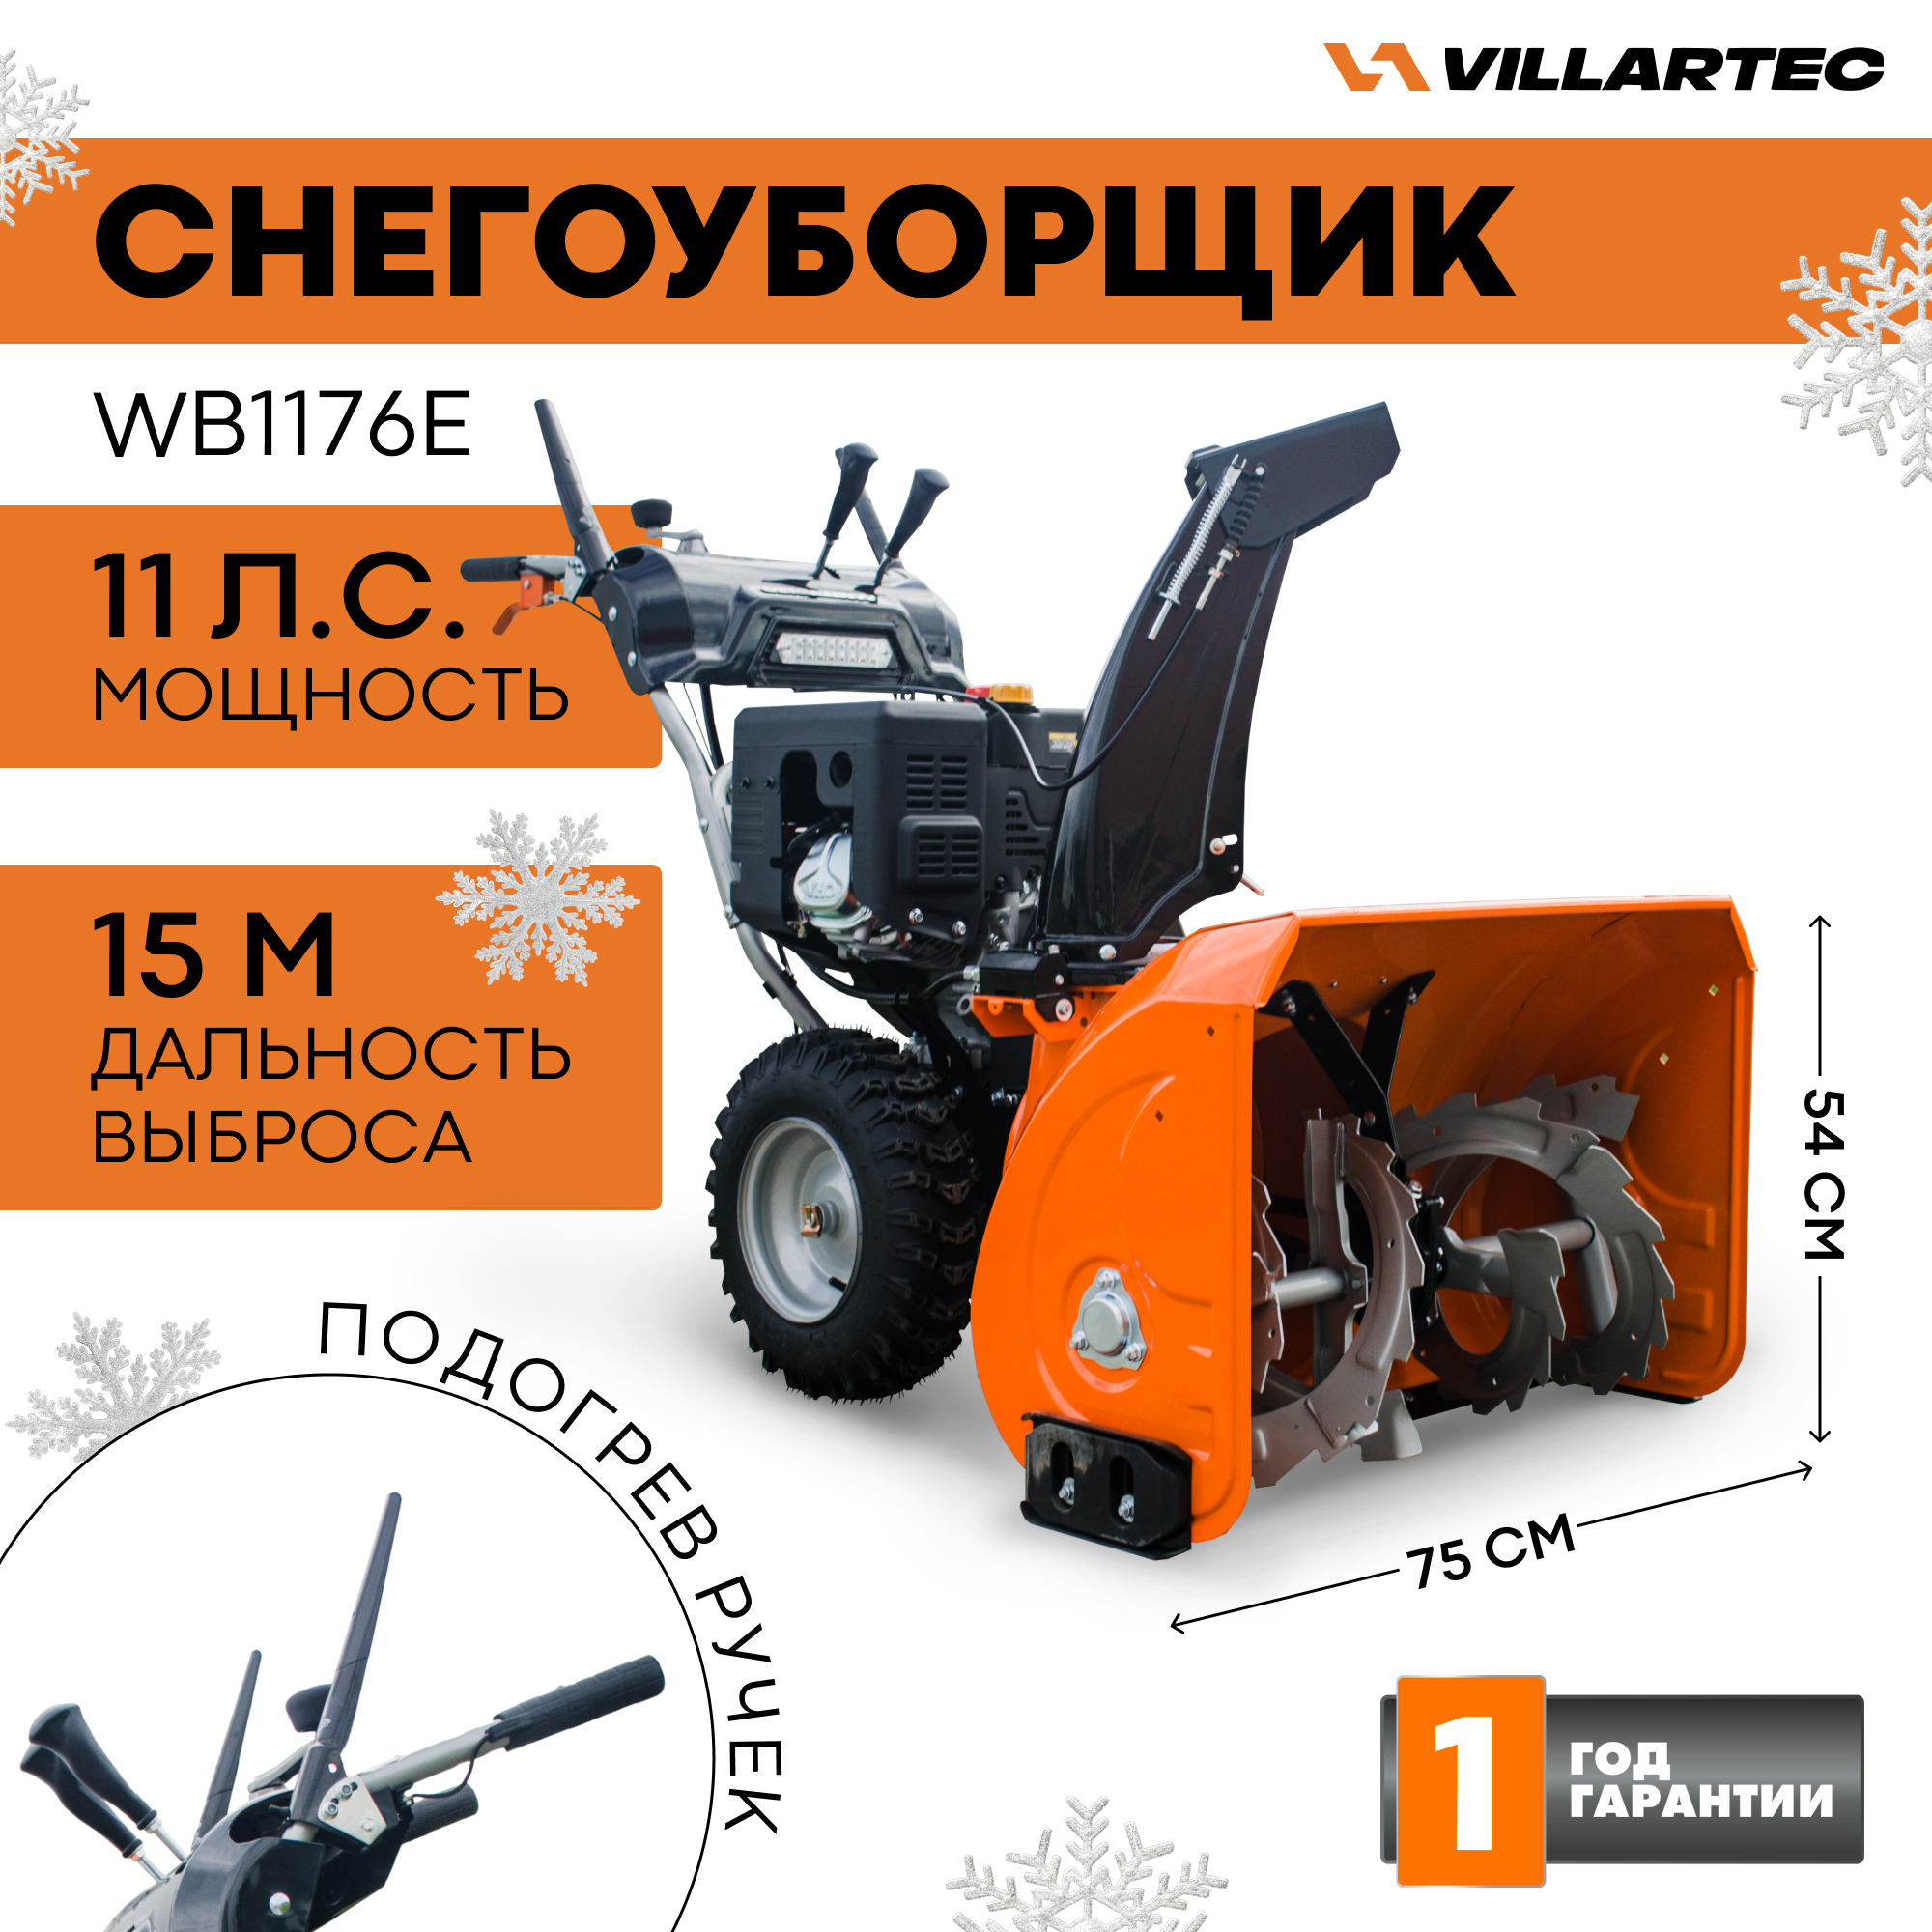 Снегоуборщик бензиновый VILLARTEC WB1176E